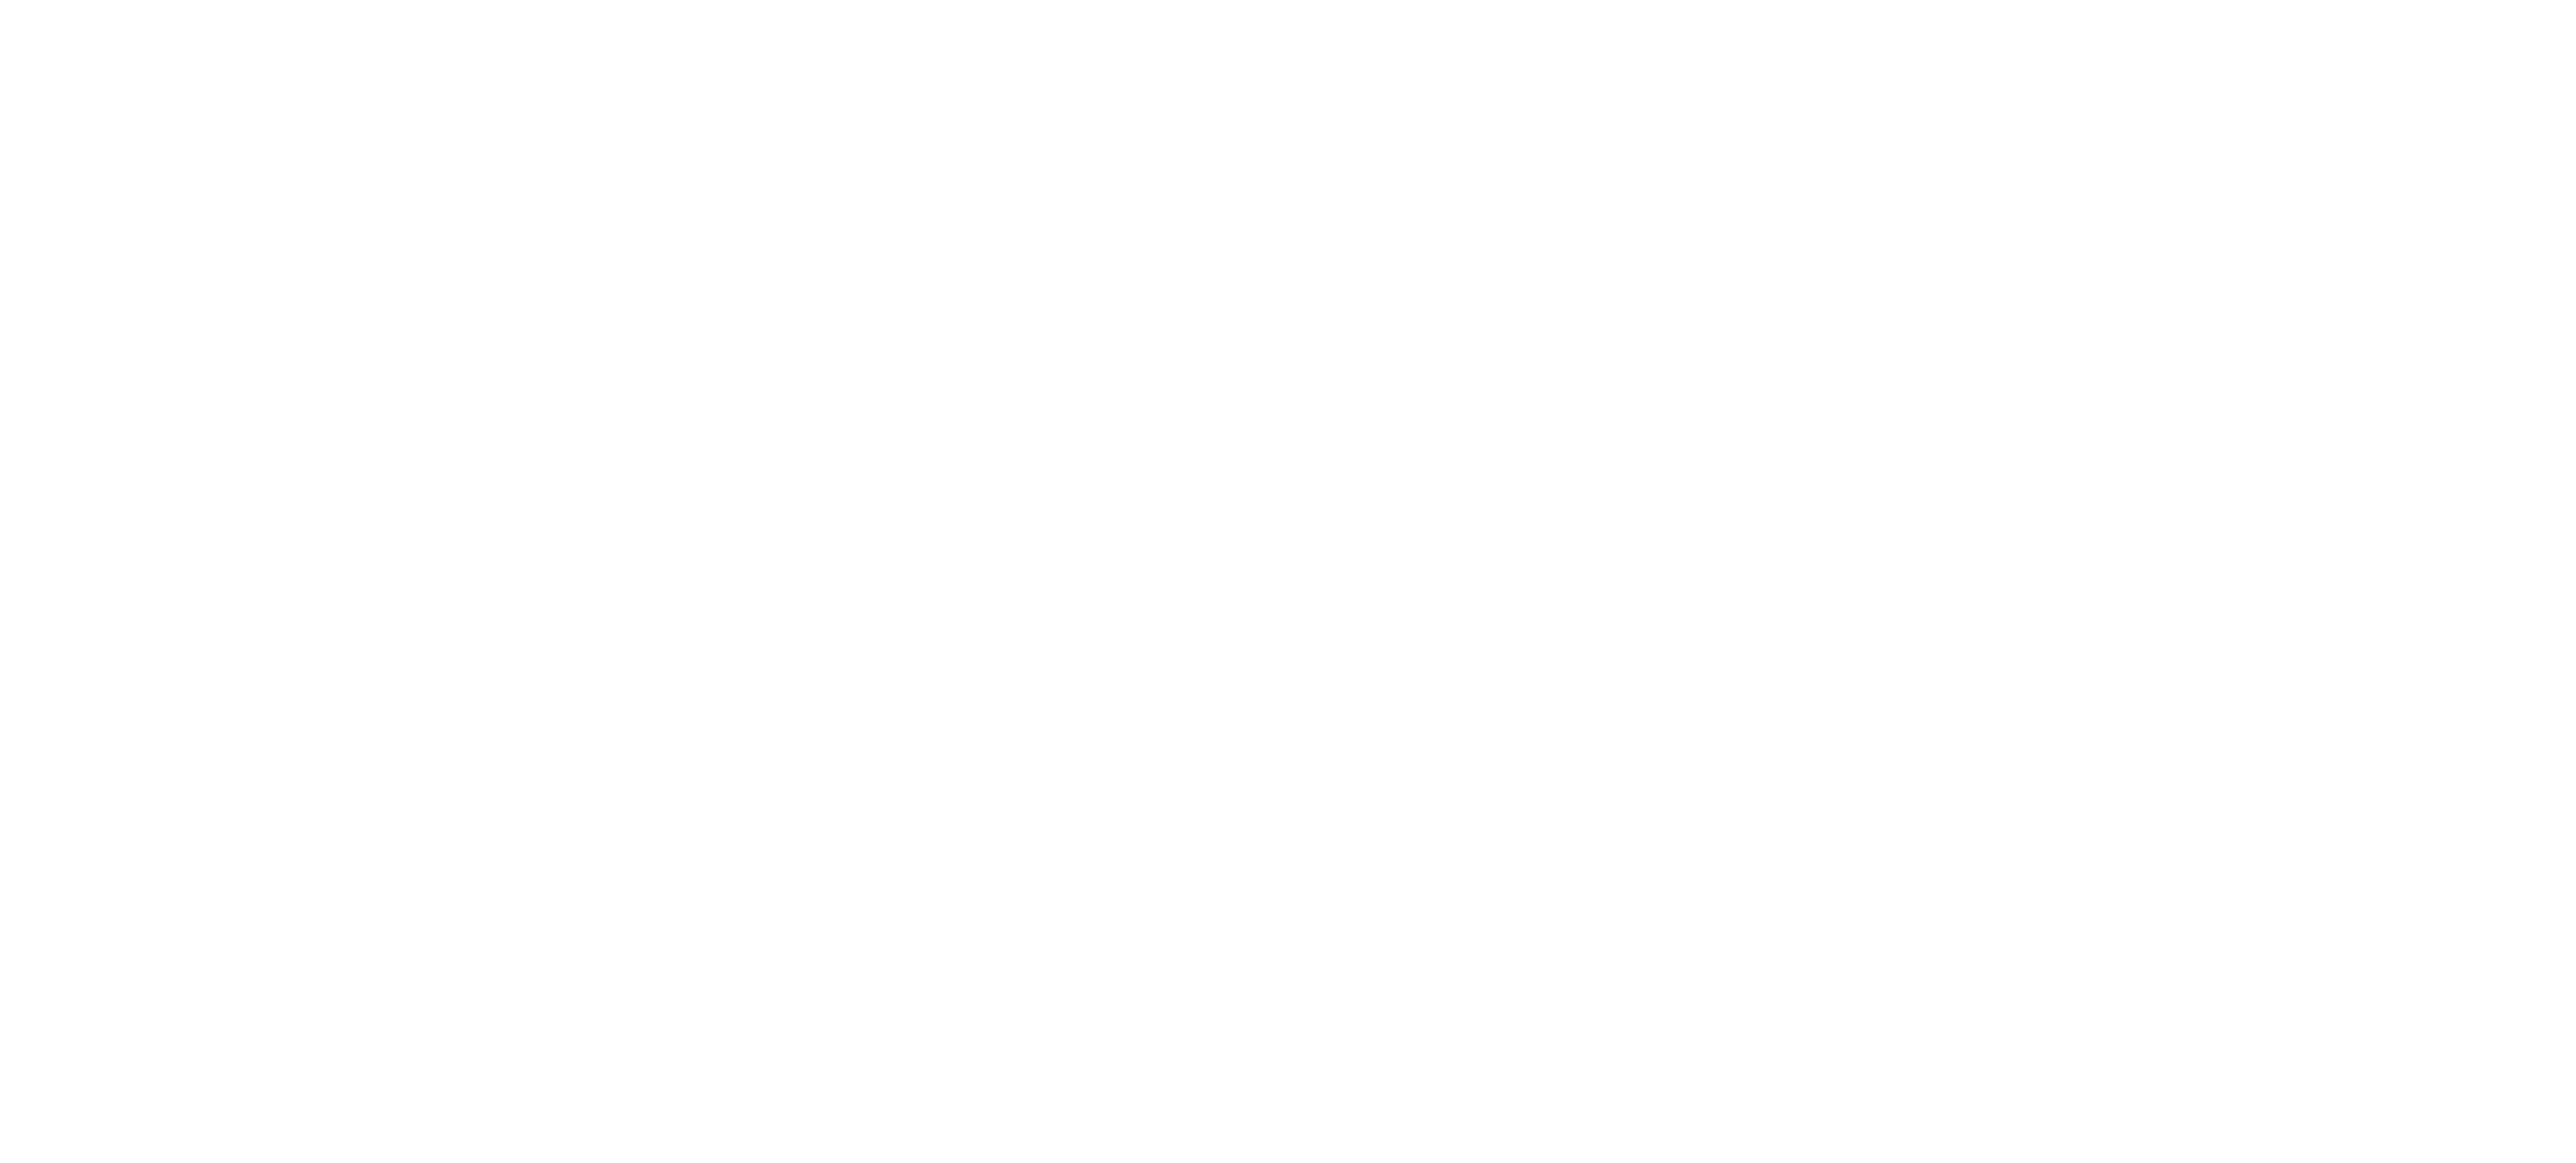 Brett Slater Solicitors logo